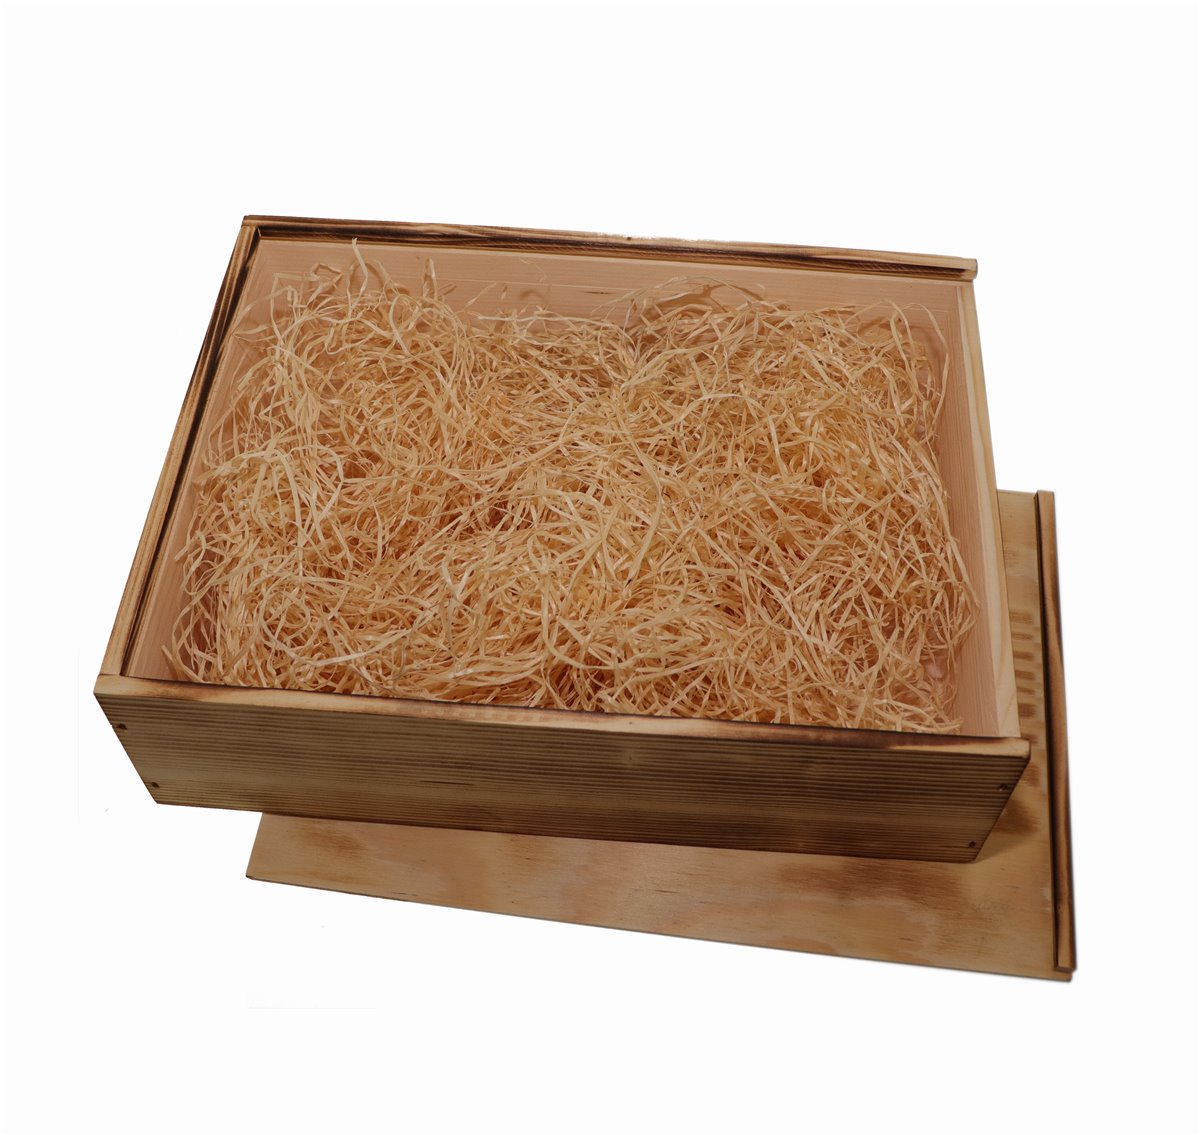 Weinkiste 3er "Holzkiste"mit Schiebedeckel inkl. Holzwolle / Holztruhe Holzbox Verpackung Geschenkidee
